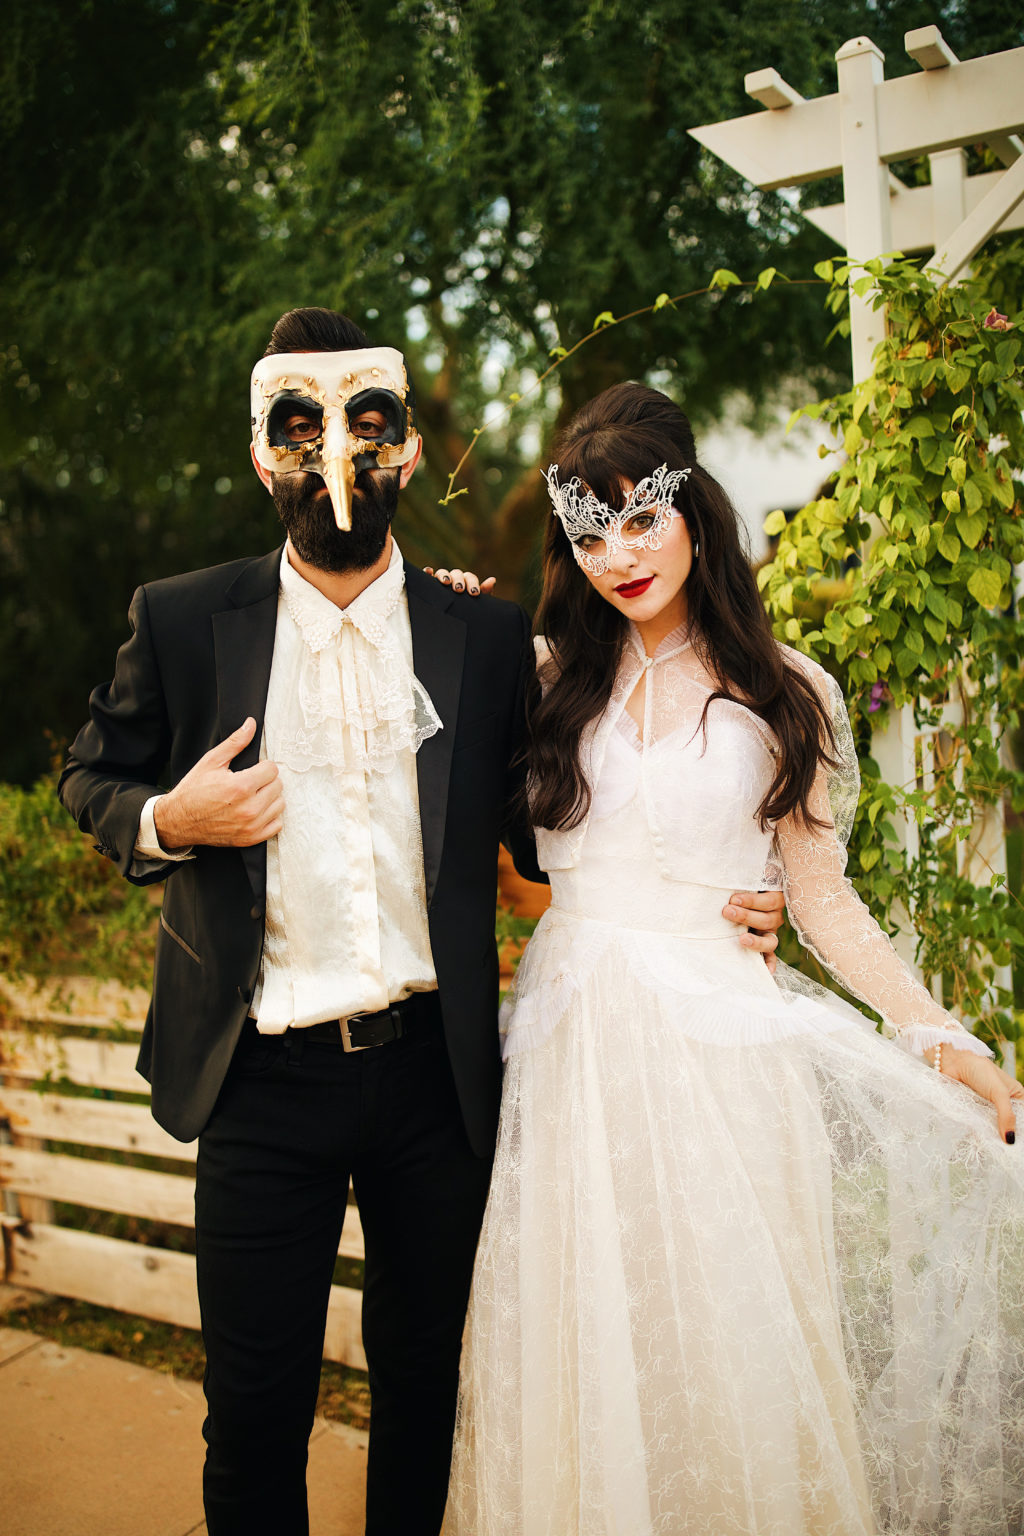 attire for masquerade ball